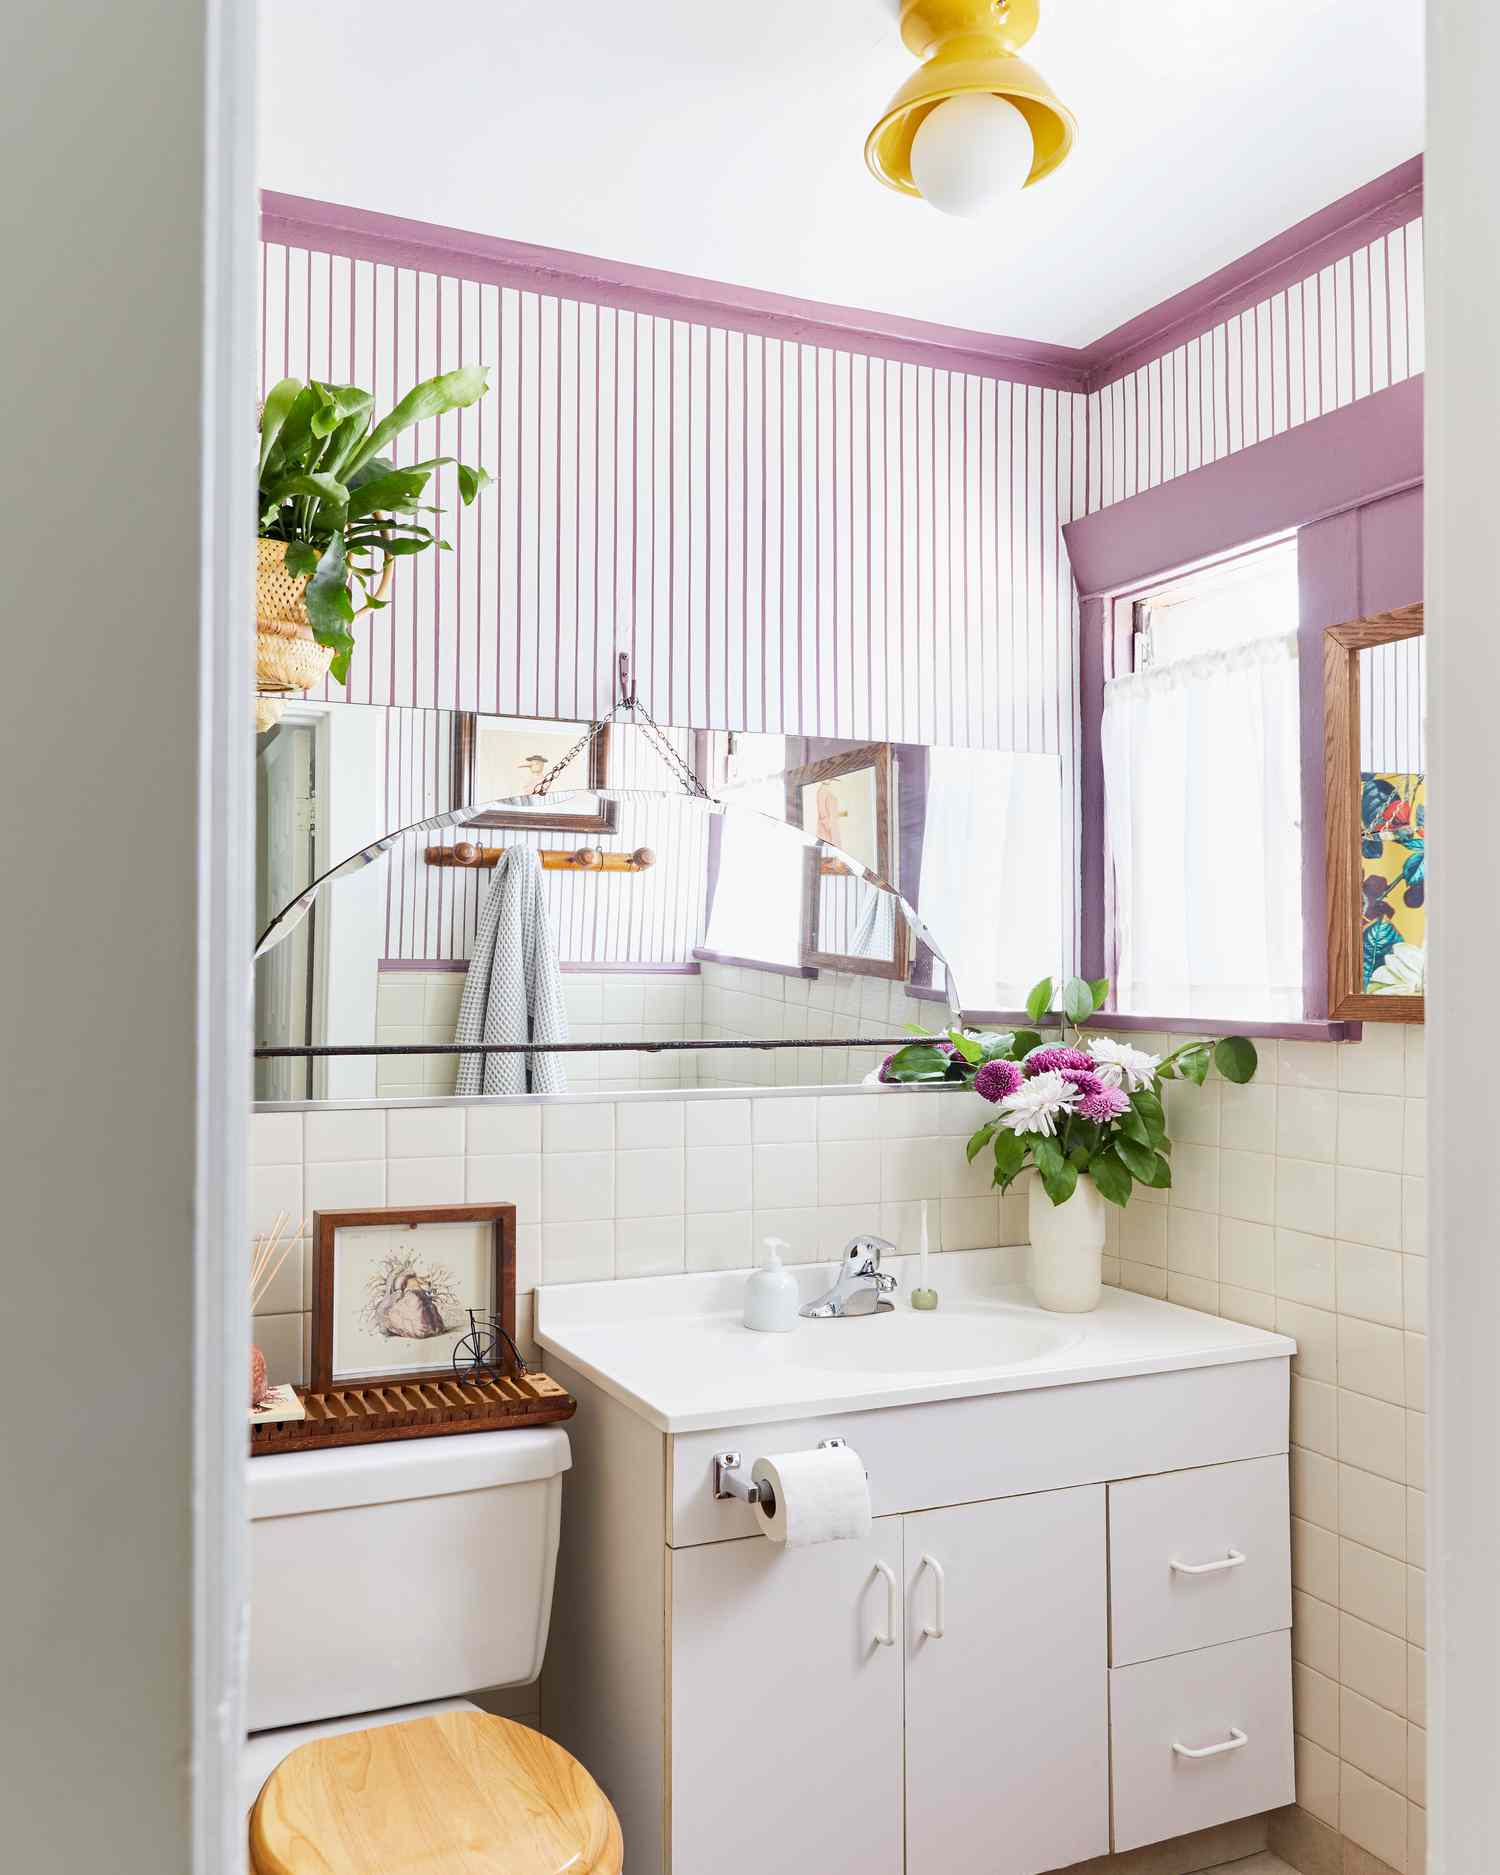 Petite salle de bain avec des rayures et des garnitures violettes.